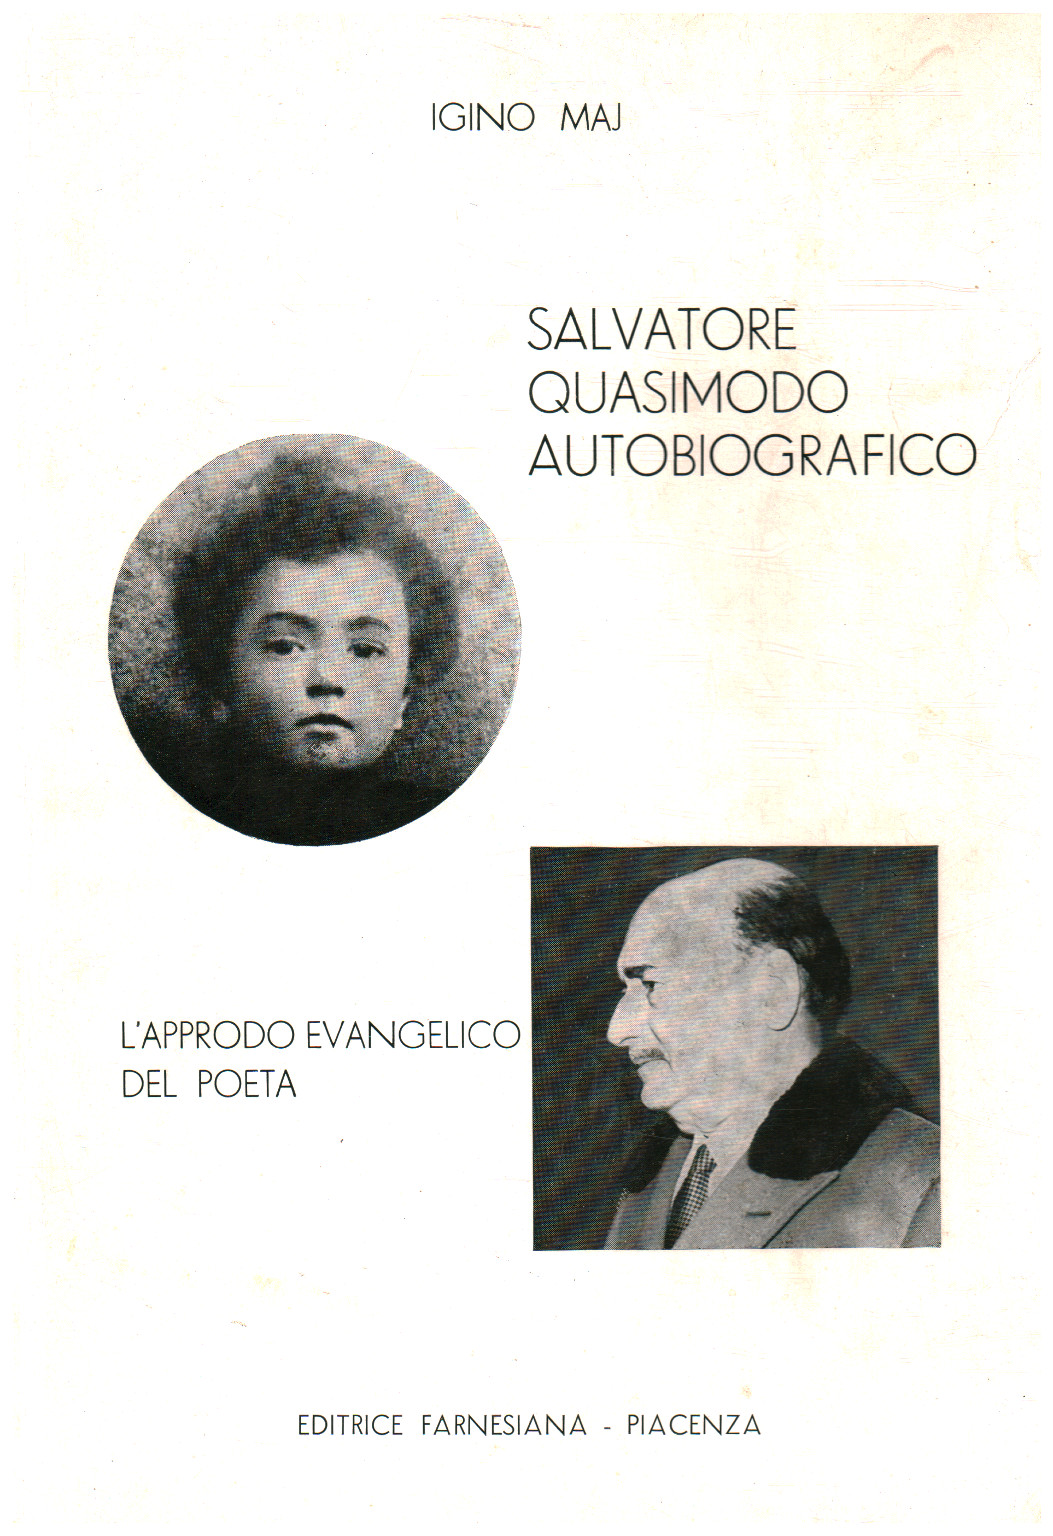 Salvatore Quasimodo autobiografico, s.a.